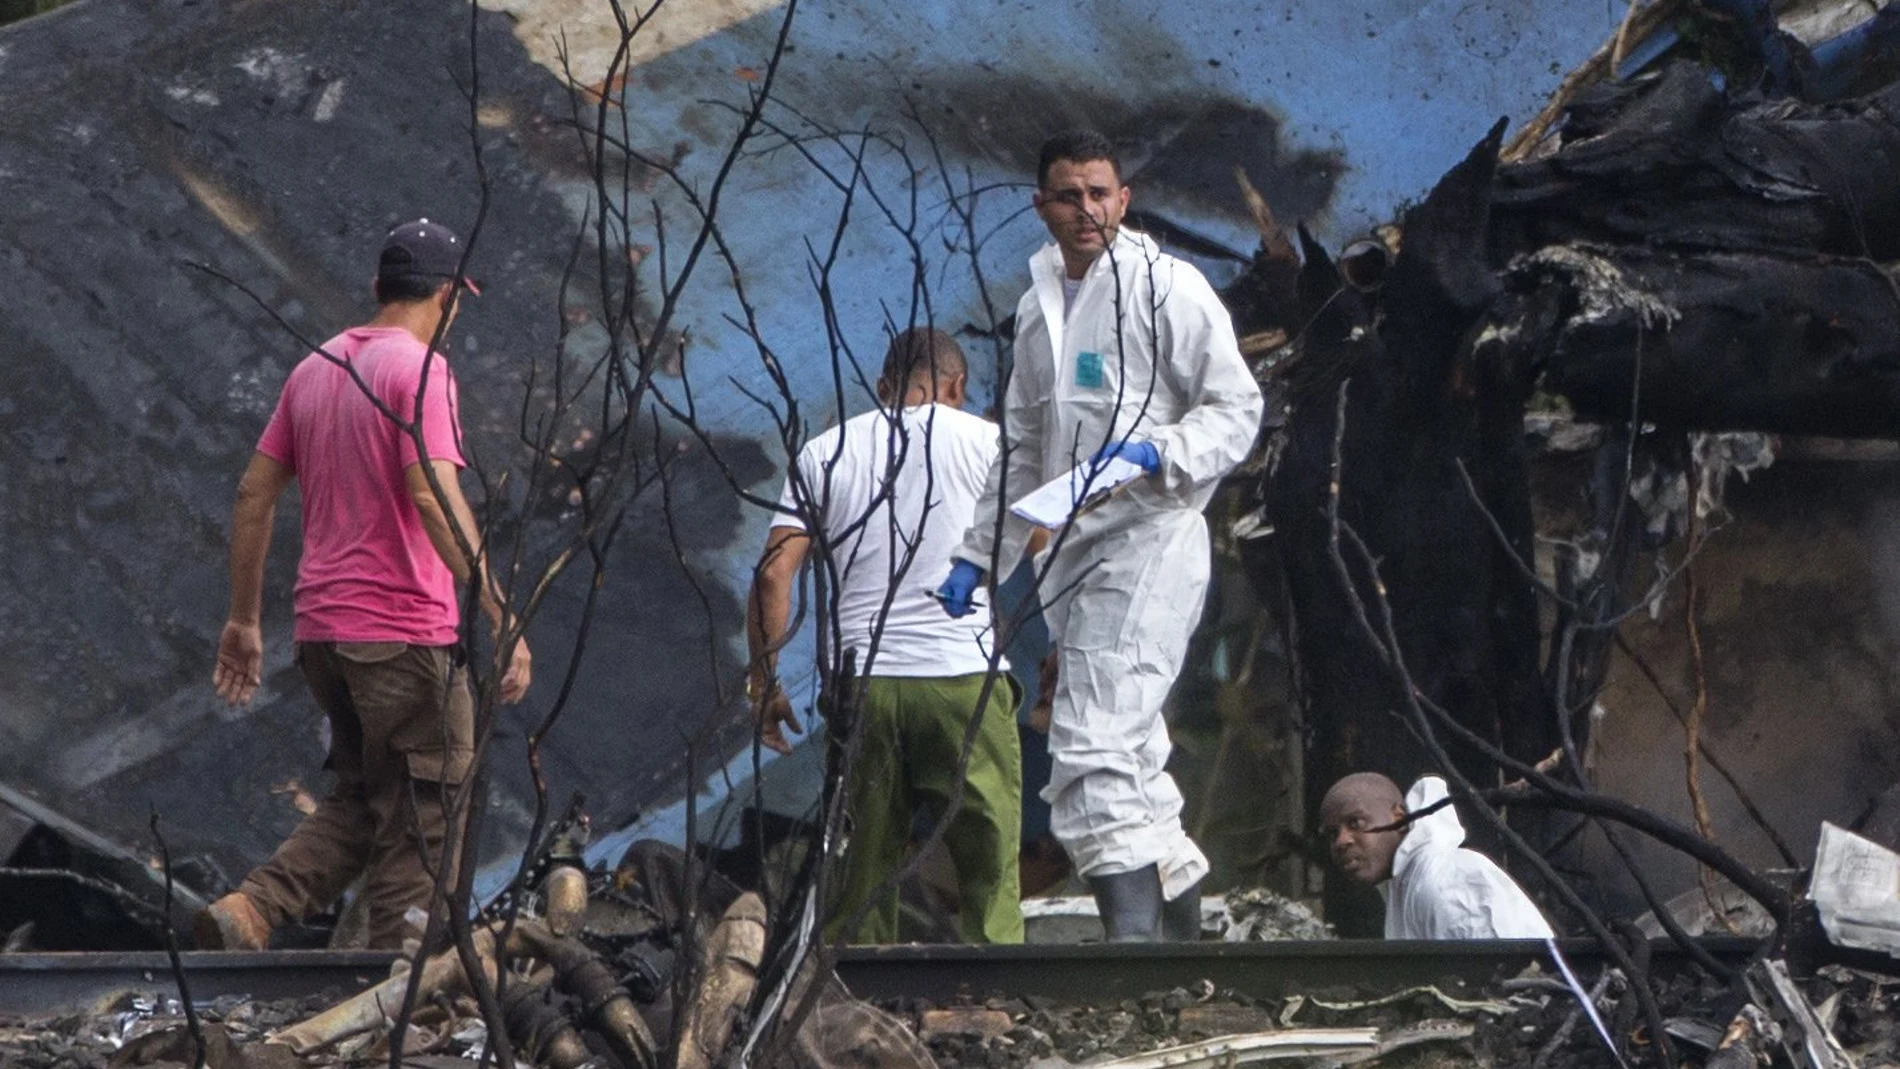 Equipos de rescate trabajan entre los restos del avión accidentado en el aeropuerto de La Habana en 2018